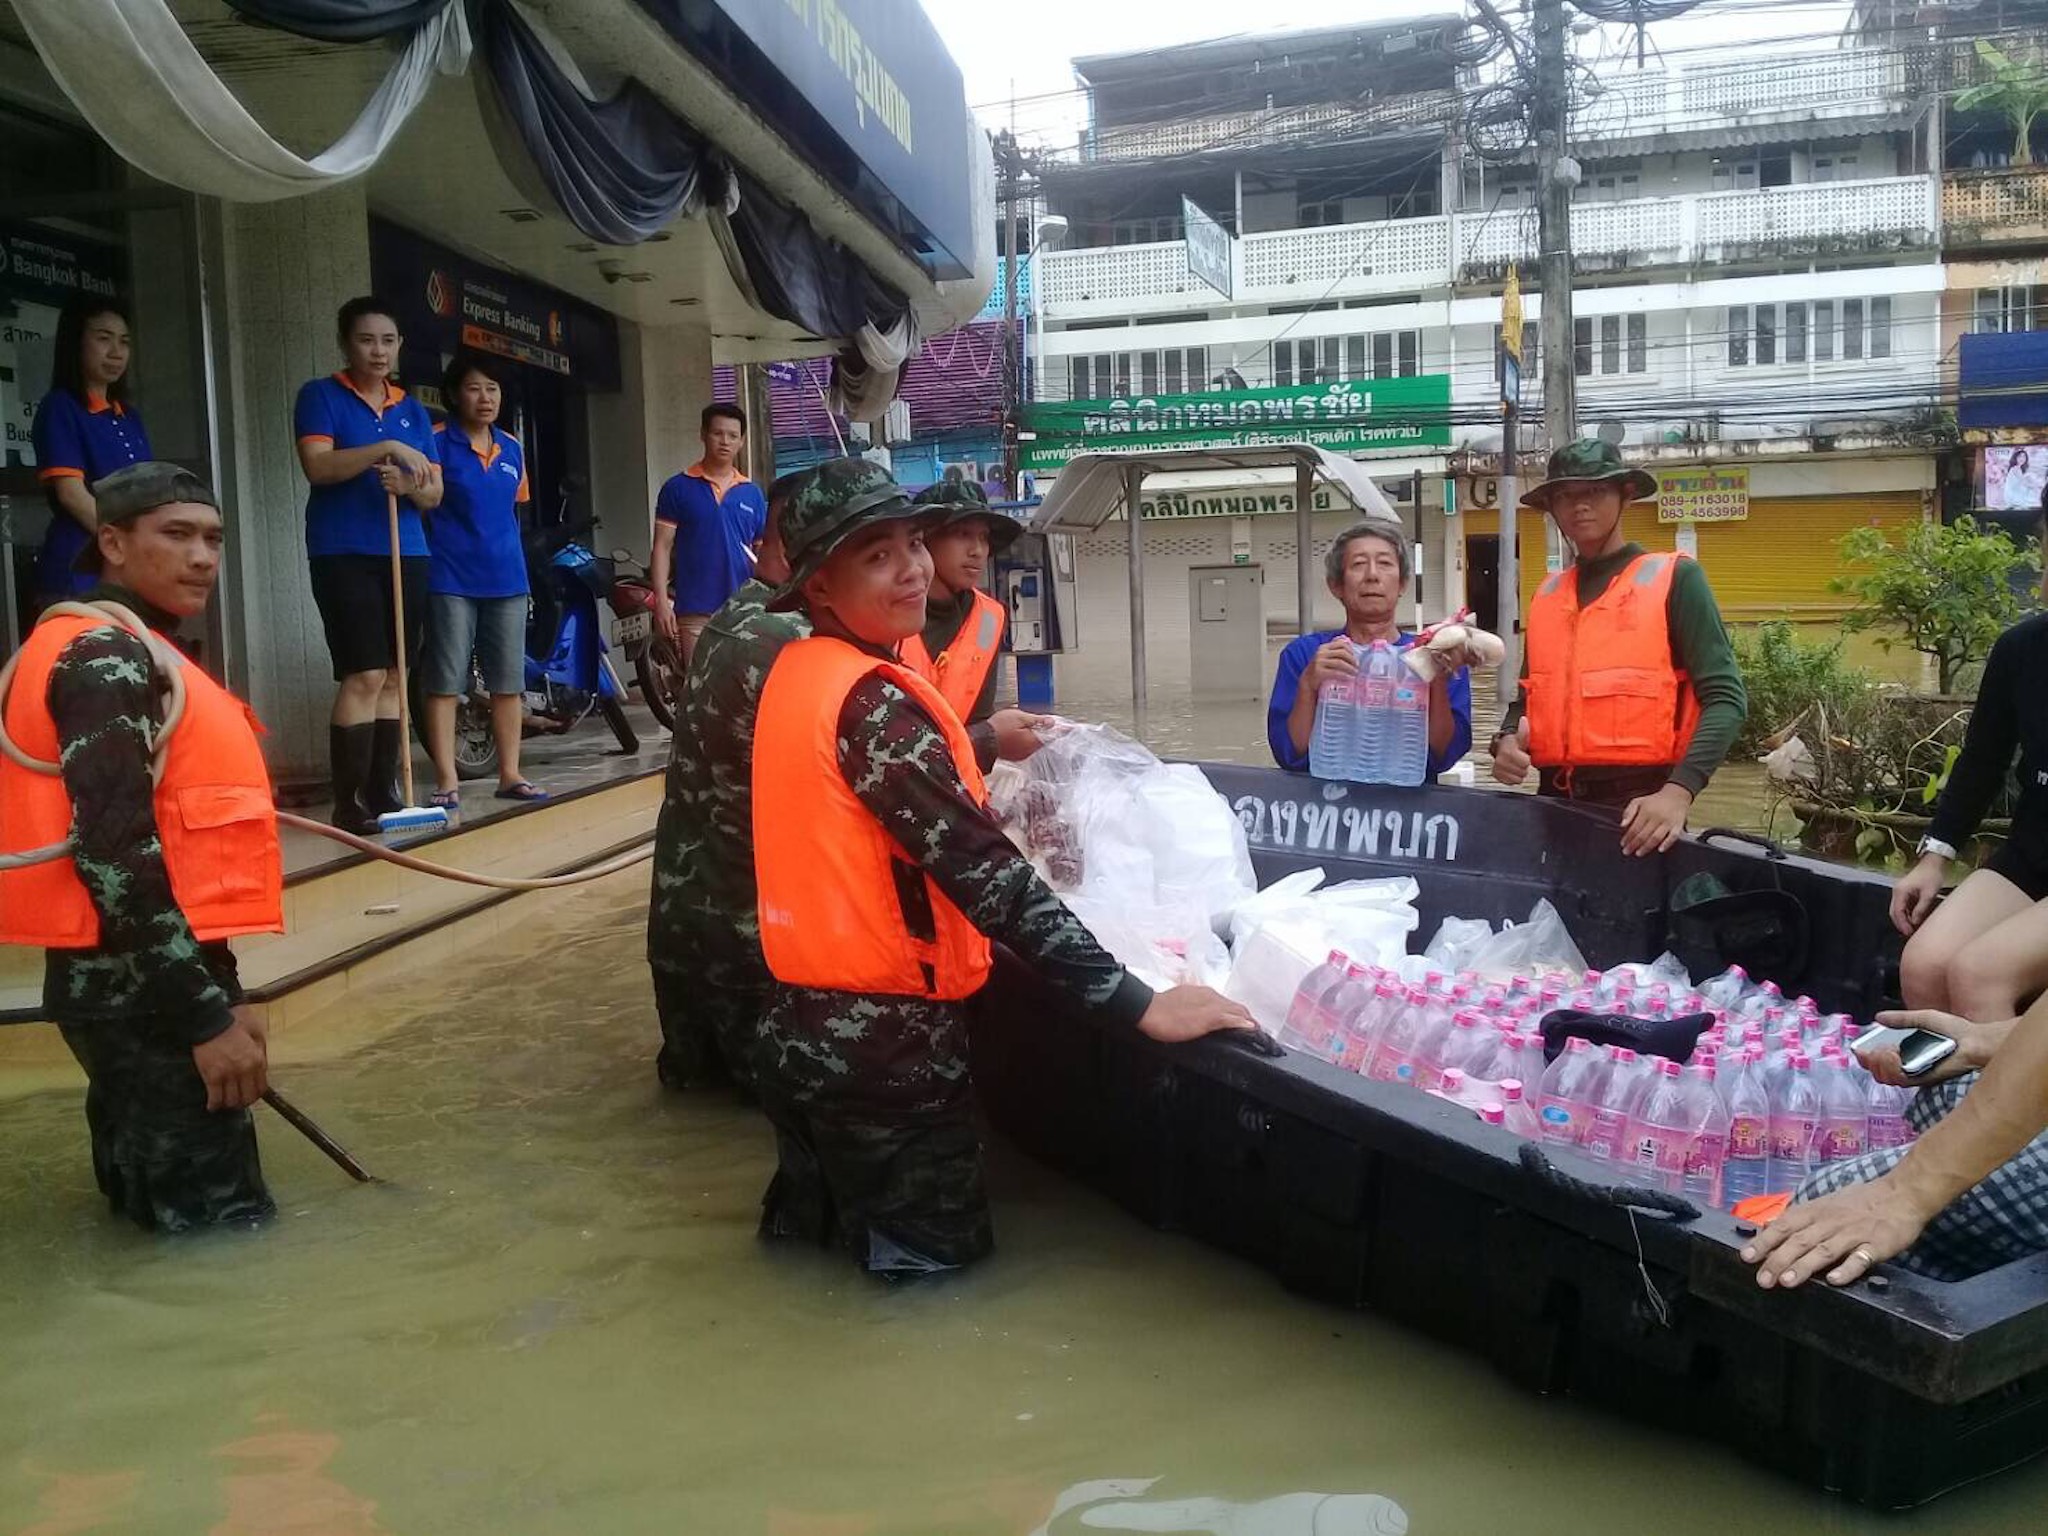 โครงการช่วยเหลือผู้ประภัยน้ำท่วมภาคอีสาน วันที่  7 สิงหาคม 2560  ณ มณฑลทหารบกที่ 23 ค่ายศรีพัชรินทร อ.เมือง  จ.ขอนแก่น   